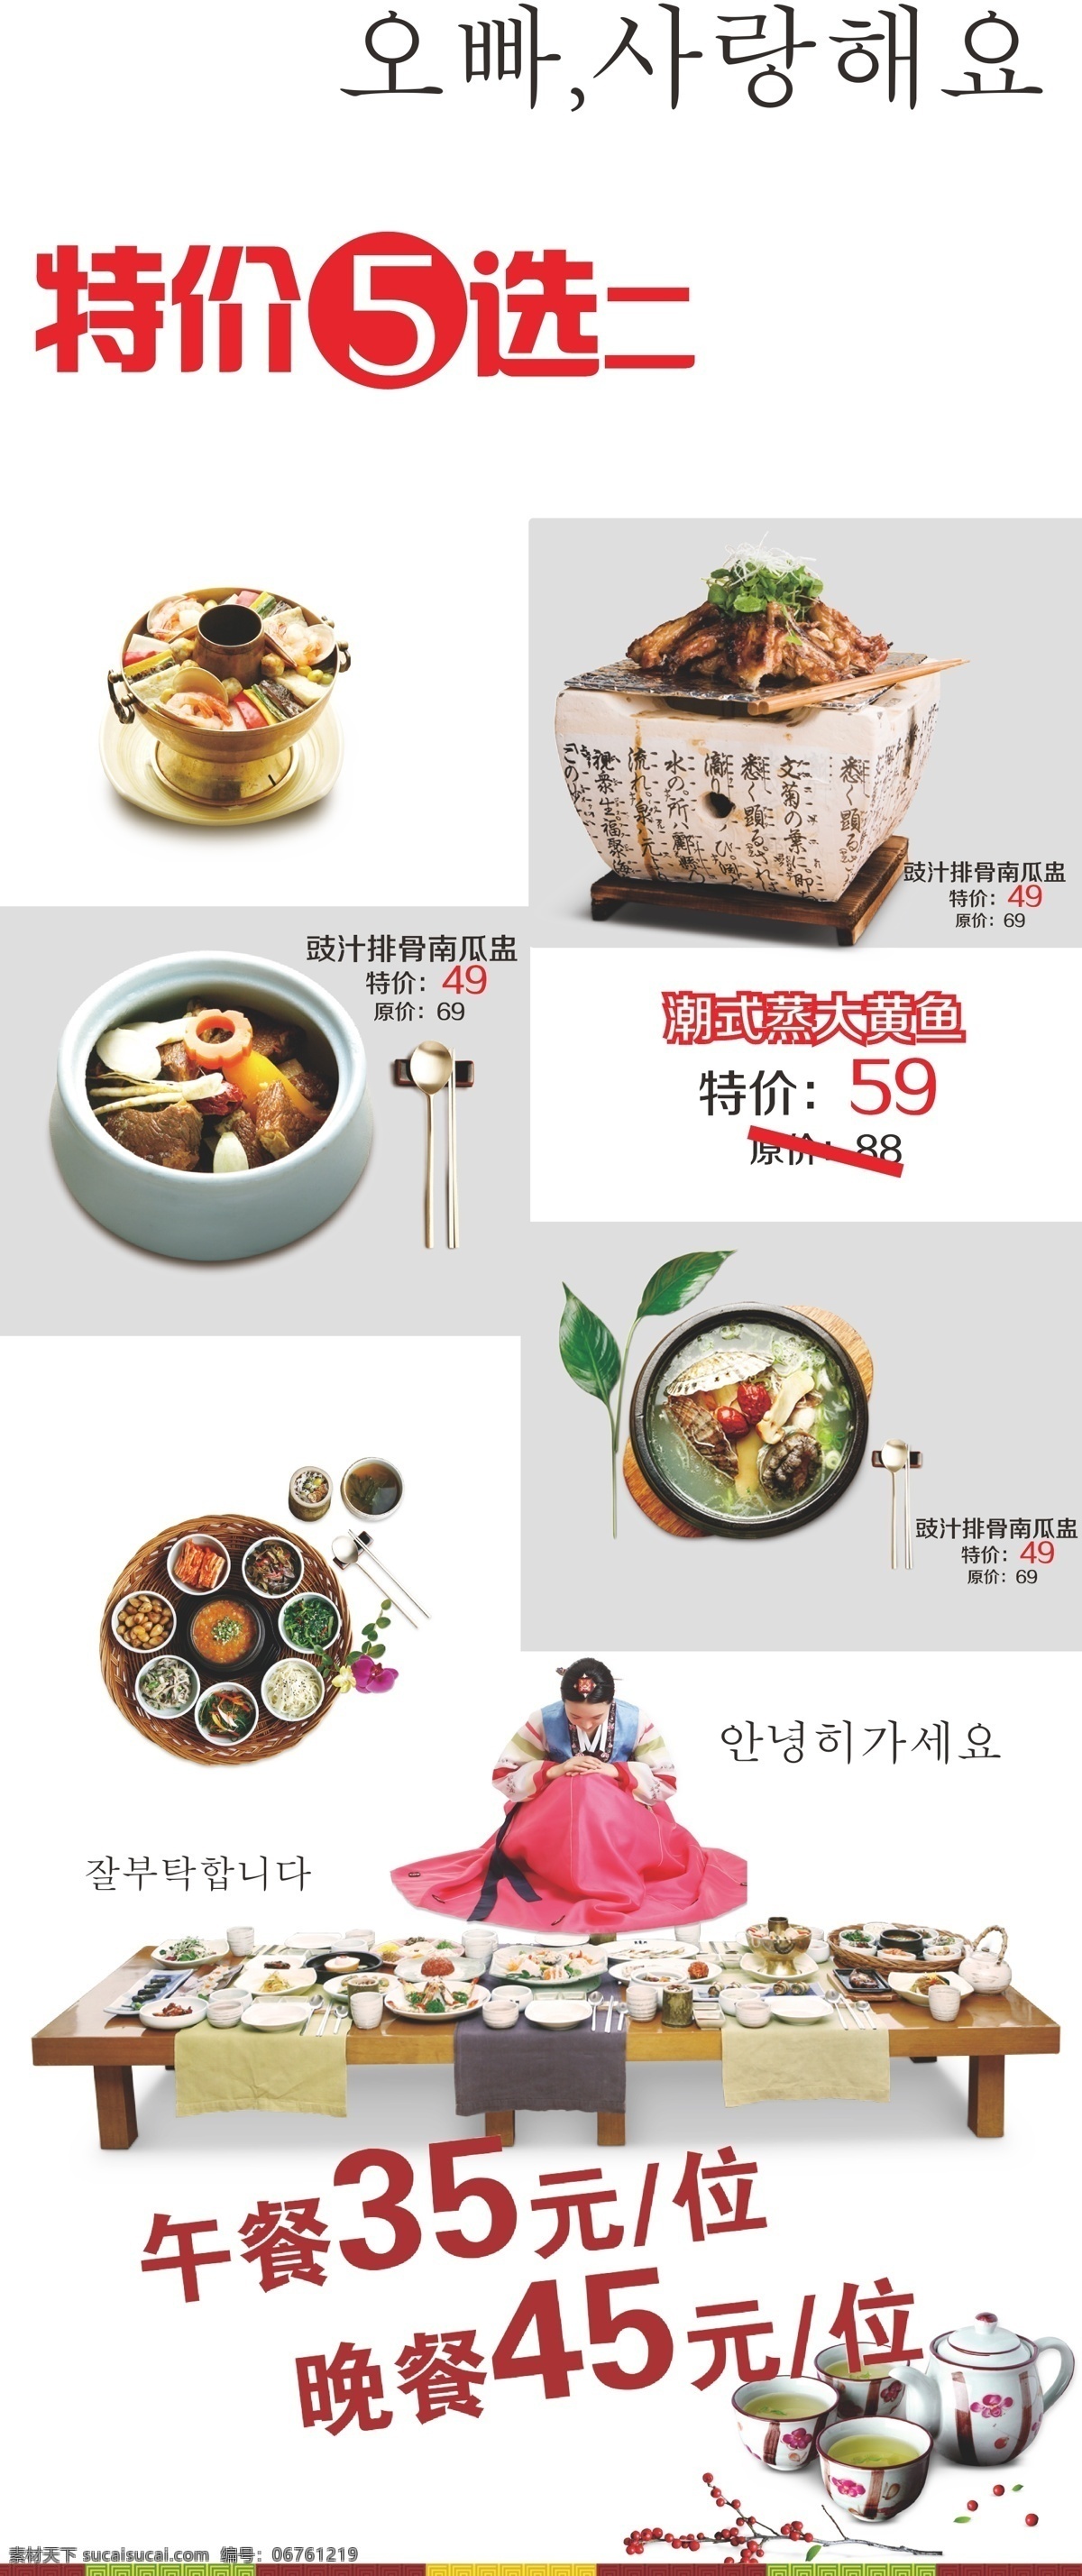 韩国美食海报 韩国 美食 海报 白色